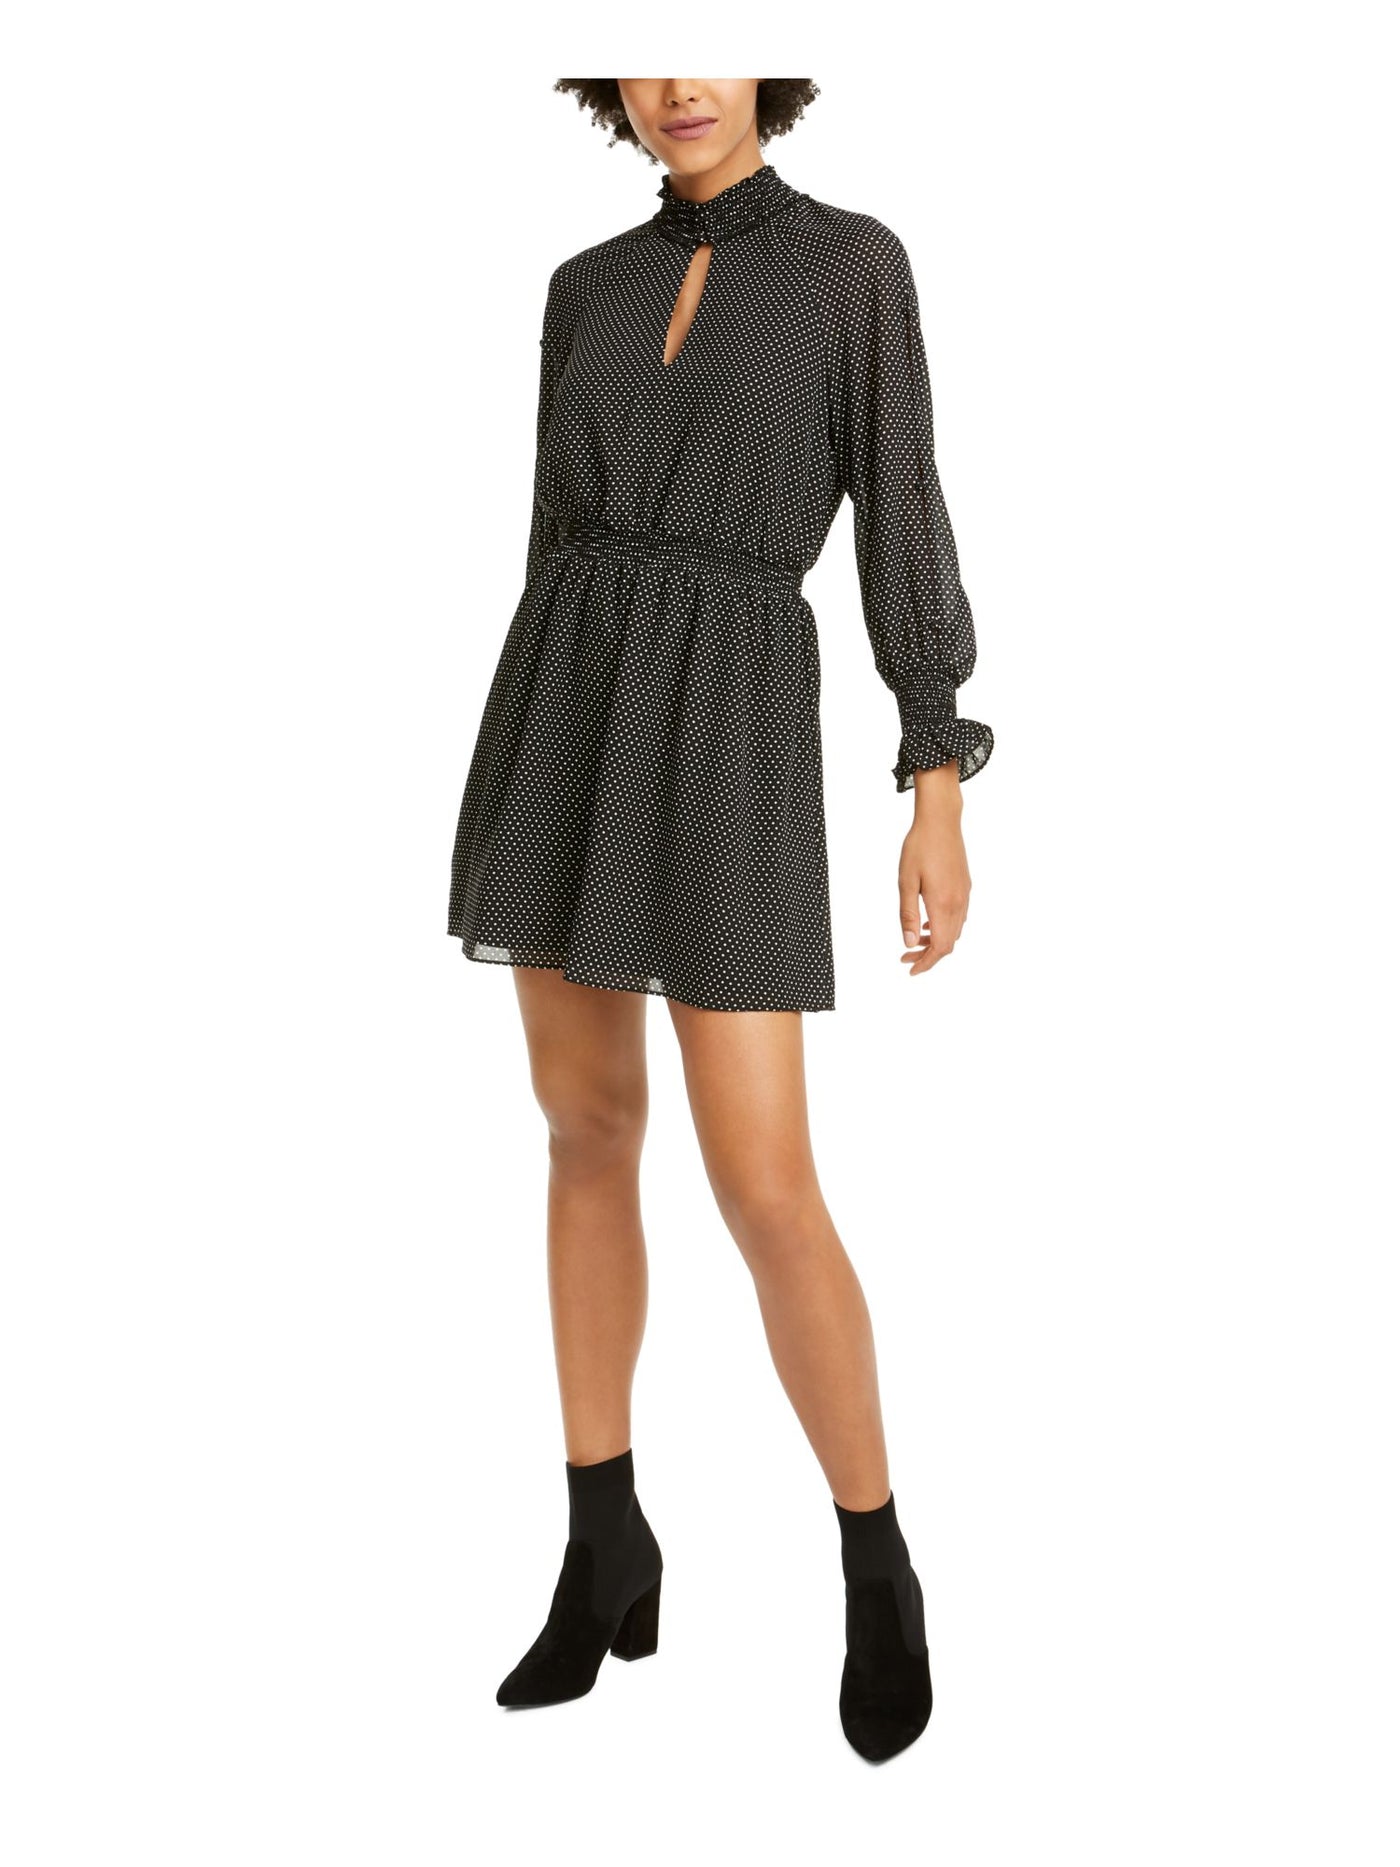 RACHEL ROY Womens Black Polka Dot Long Sleeve Keyhole Short Fit + Flare Dress XS